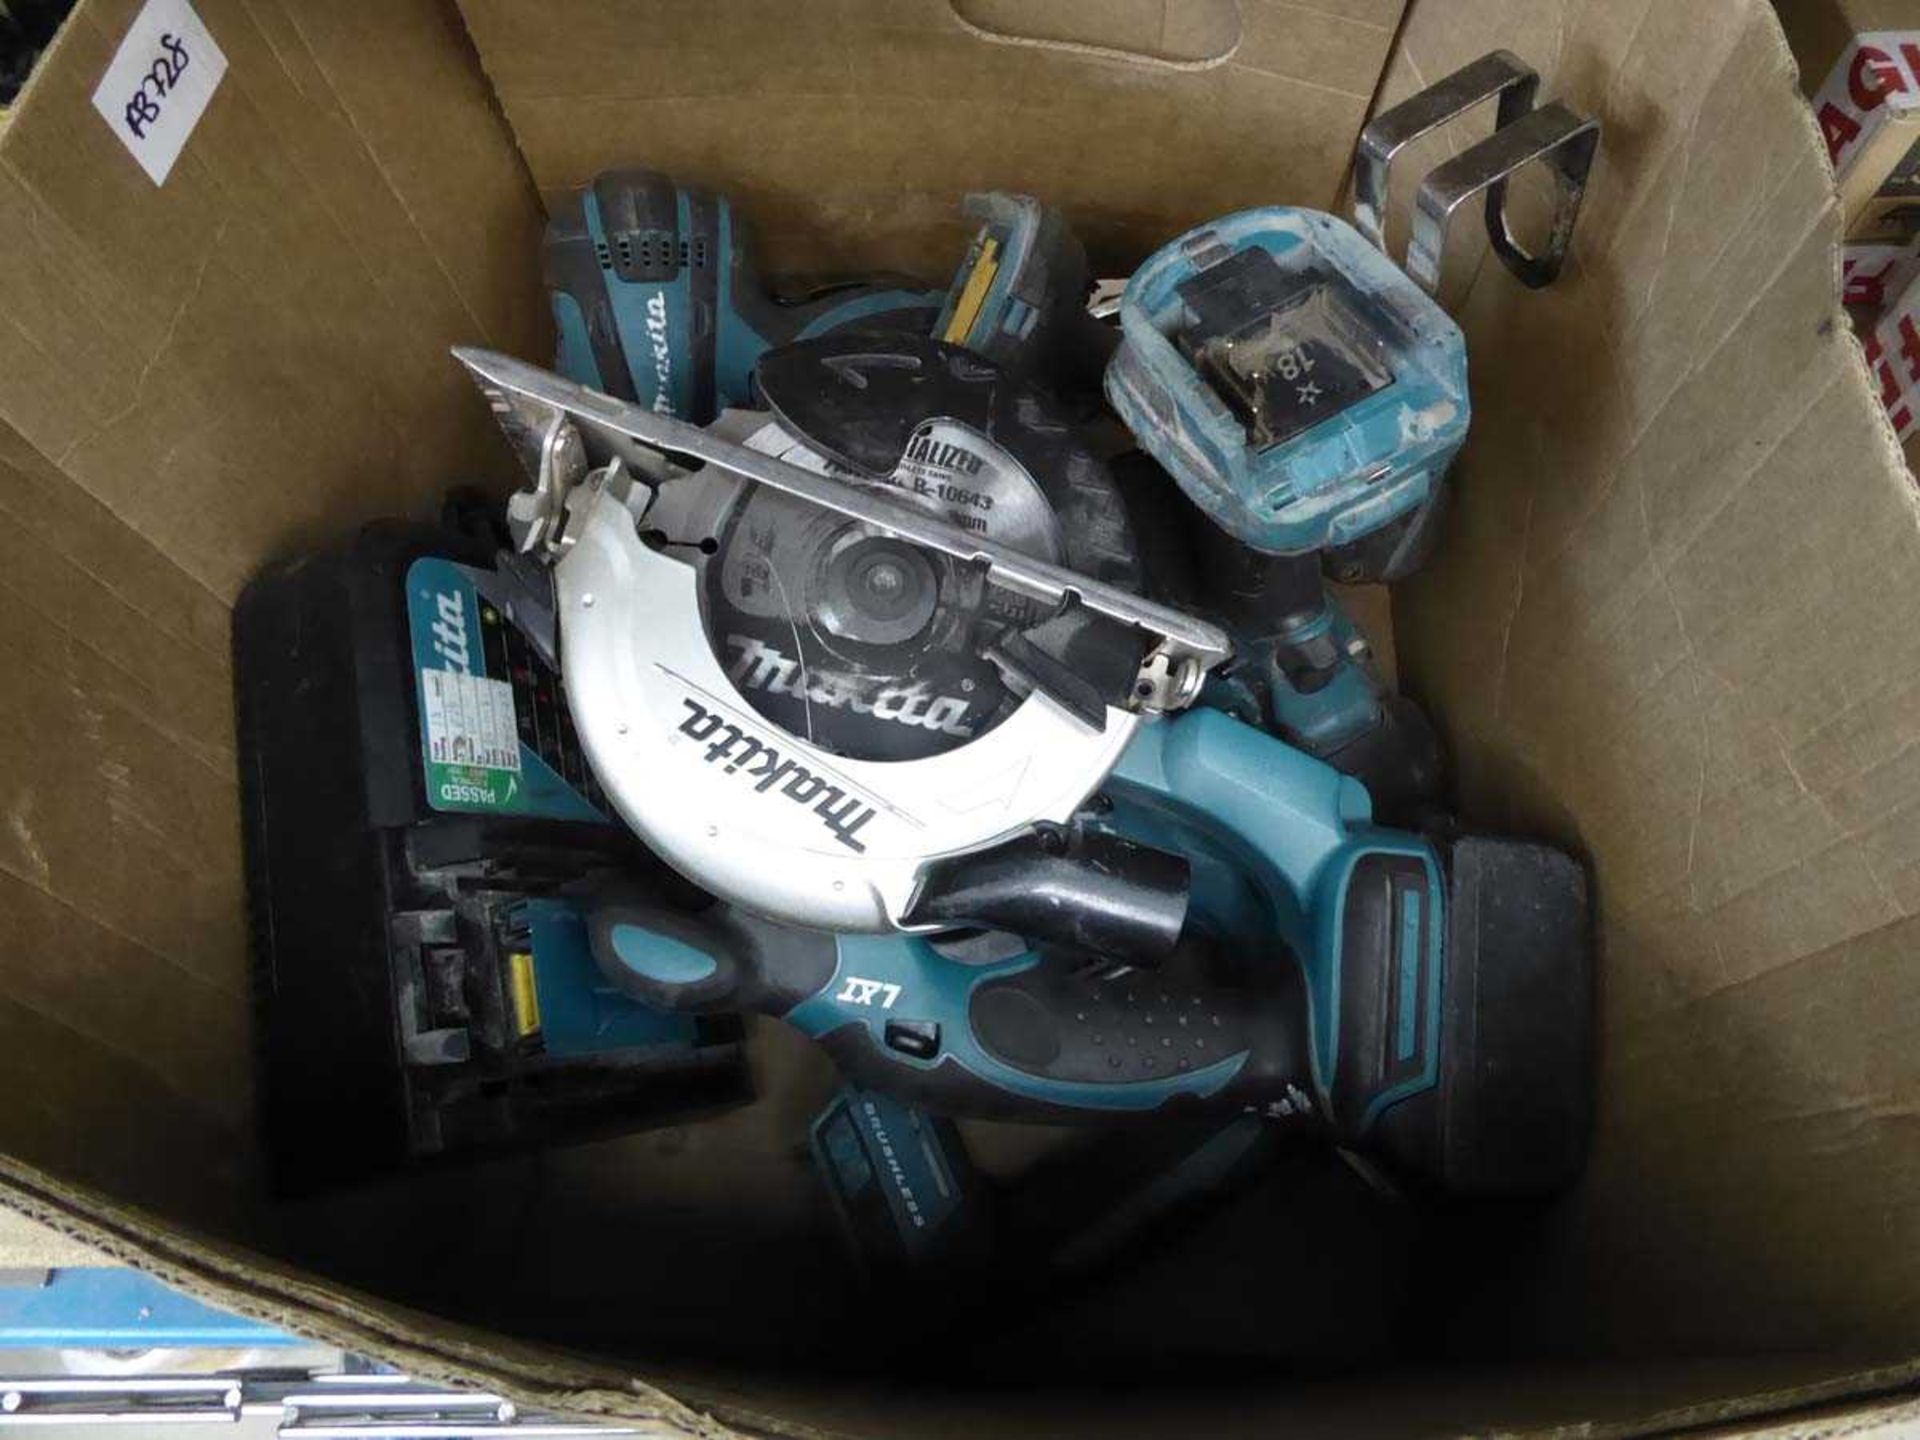 Box of Makita tools including circular saw, impact drive, reciprocating saw, 2 batteries and